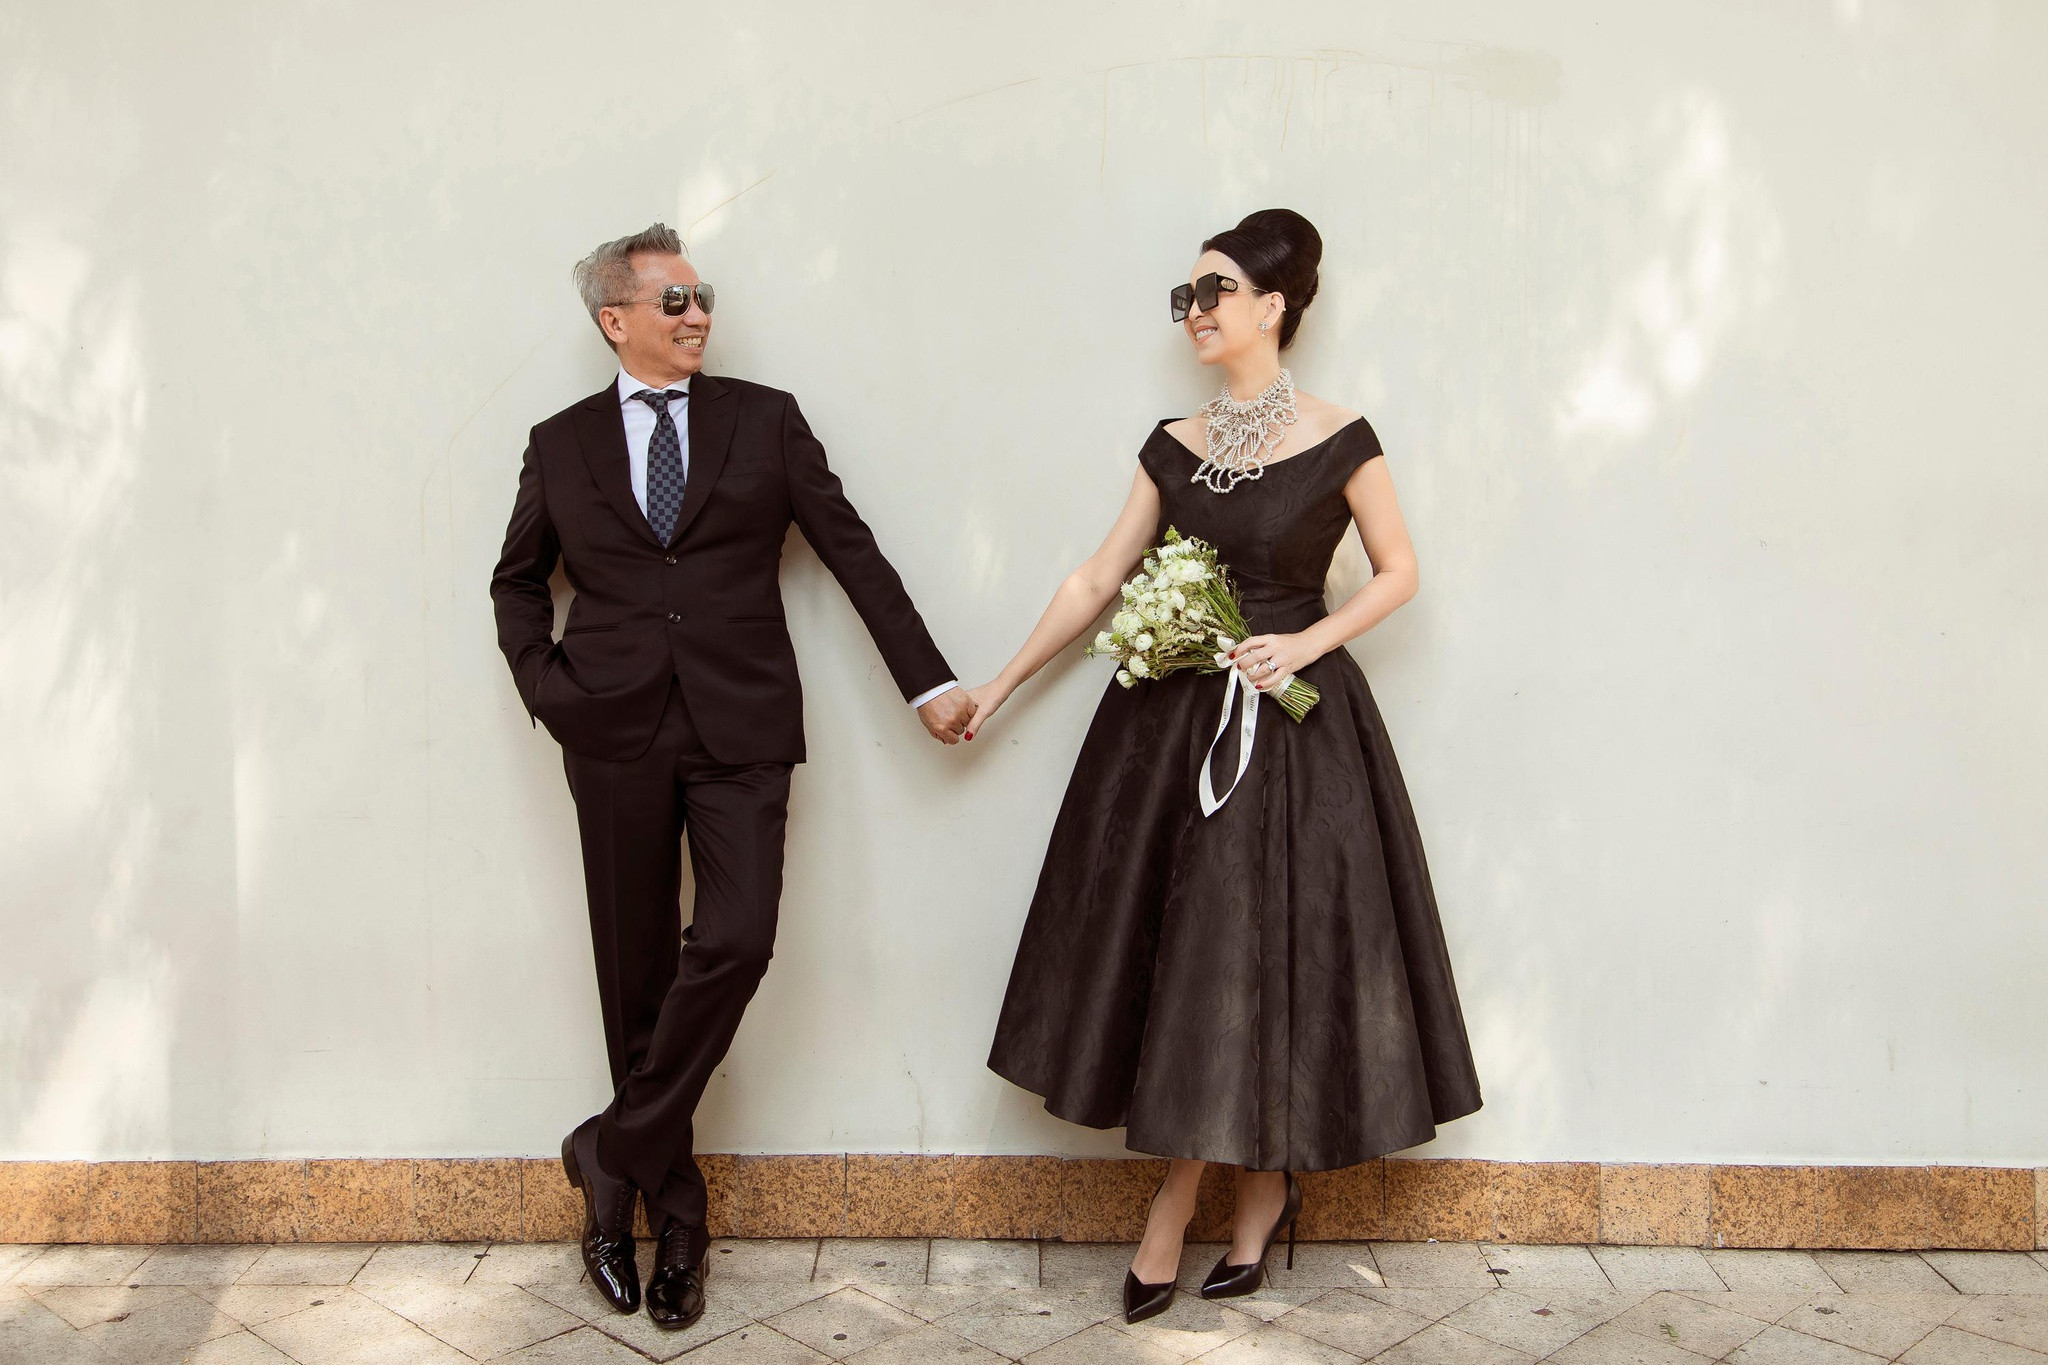 Năm 2021 này đánh dấu 27 năm bền chặt cuộc hôn nhân của Diễm My và doanh nhân Hà Tôn Đức